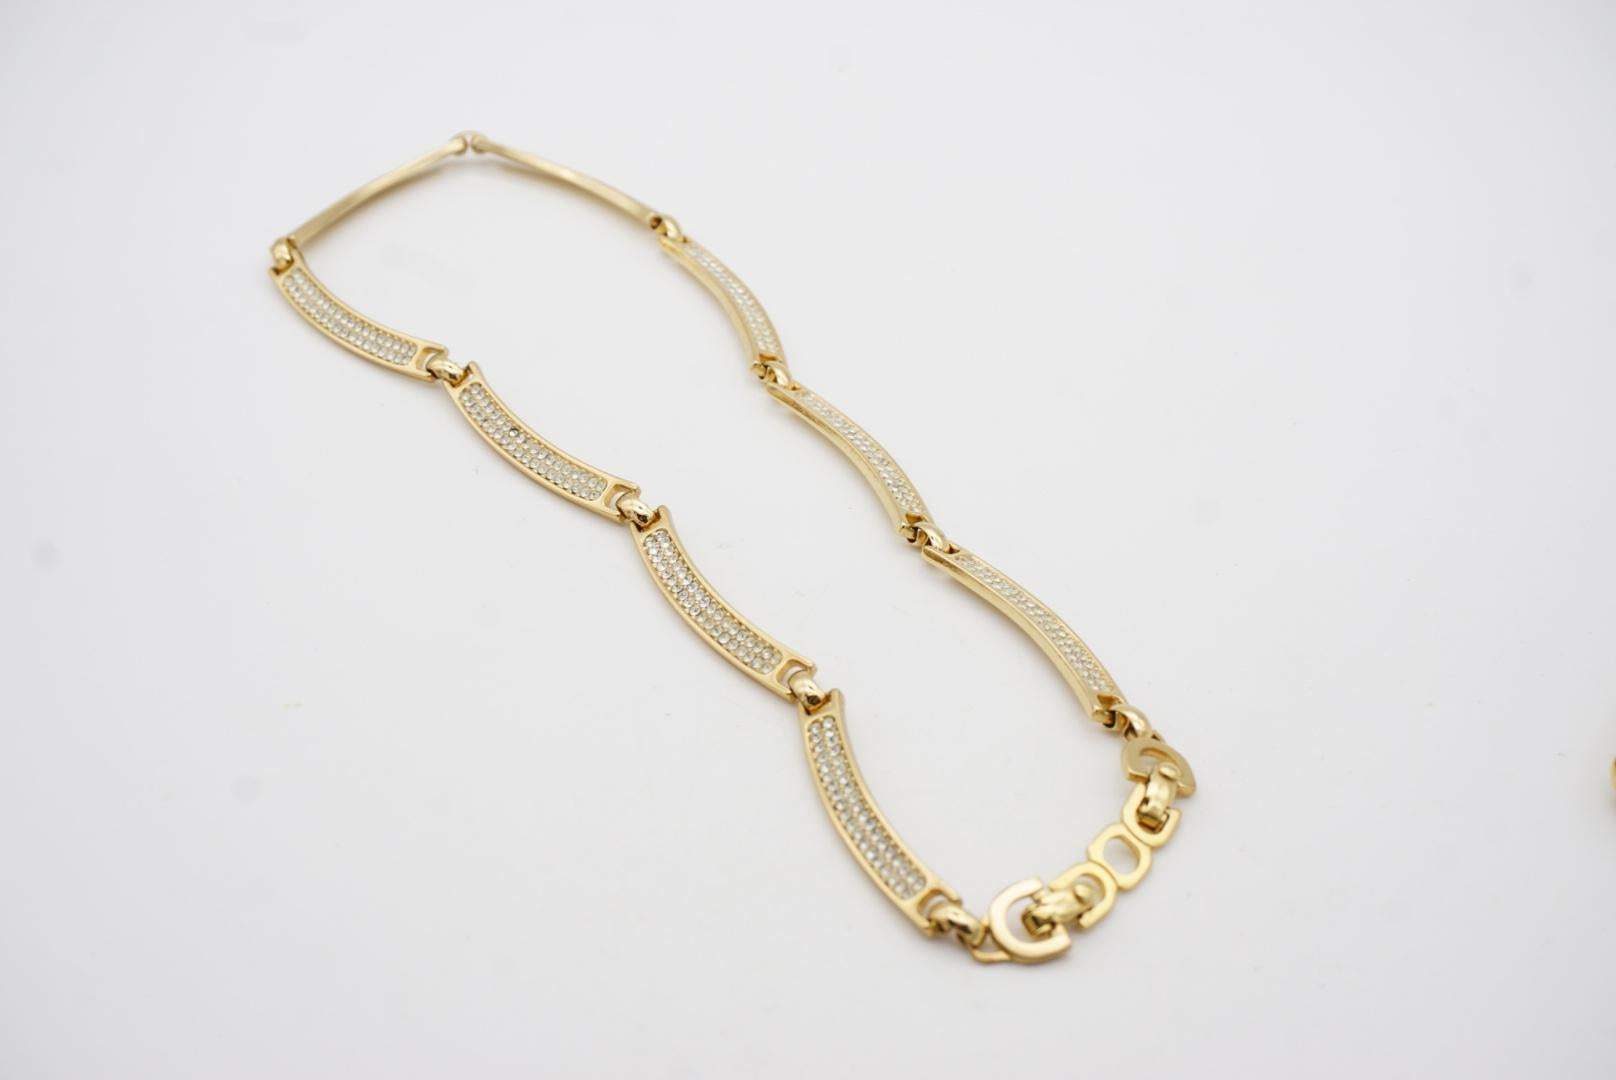 Christian Dior Vintage 1980s Unisex Crystals Interlink Choker Necklace Bracelet For Sale 10